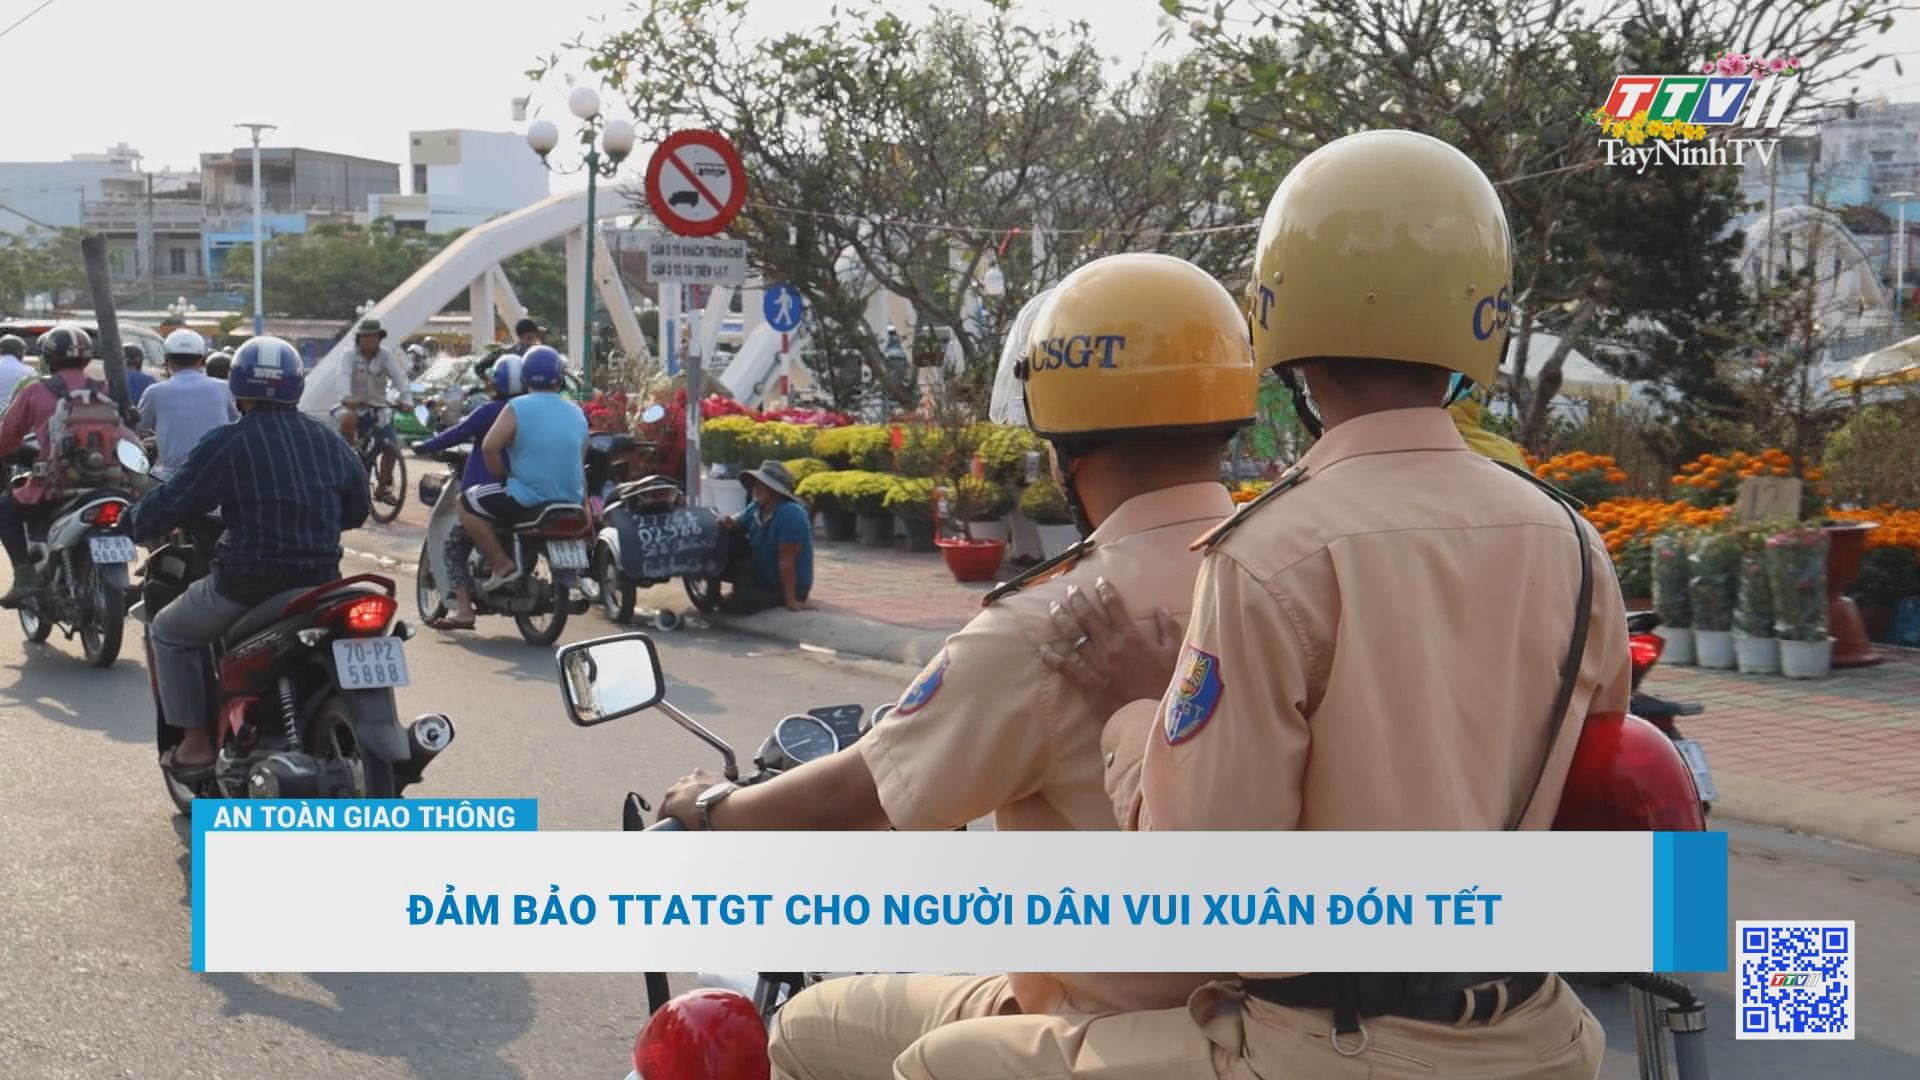 Đảm bảo TTATGT cho người dân vui xuân đón Tết | An toàn giao thông | TayNinhTV